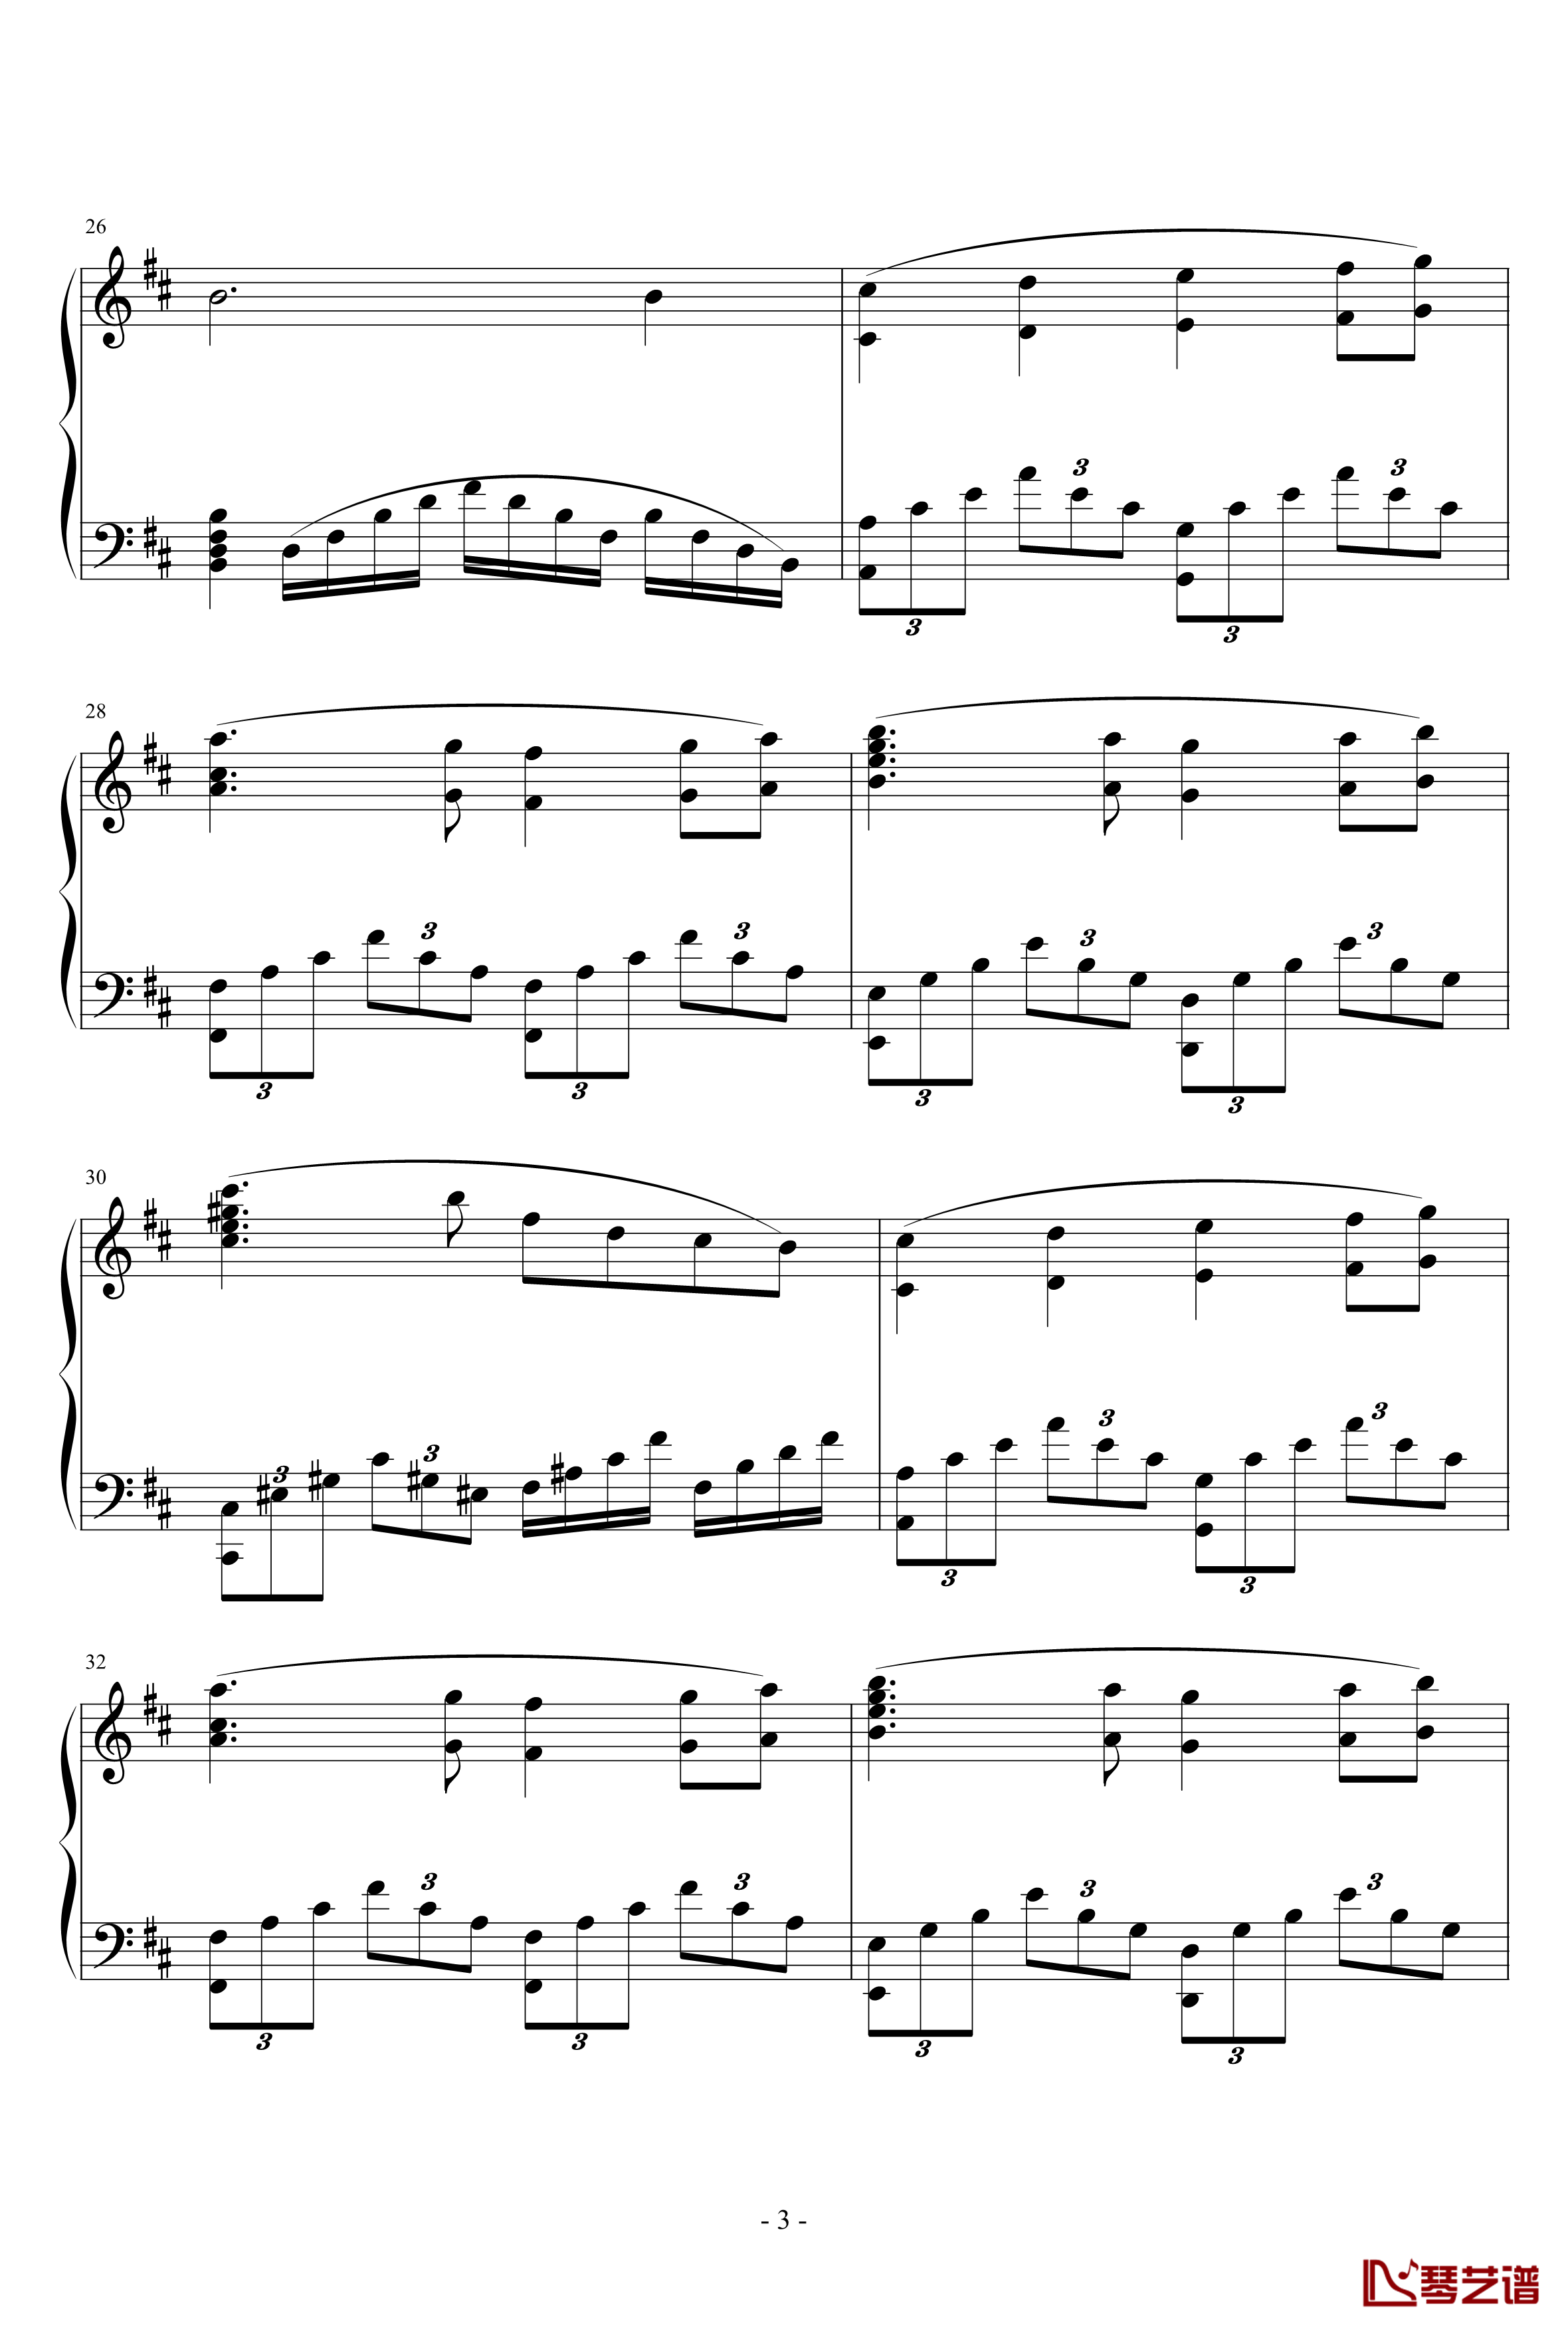 天鹅湖场景旋律钢琴谱-柴科夫斯基-Peter Ilyich Tchaikovsky3